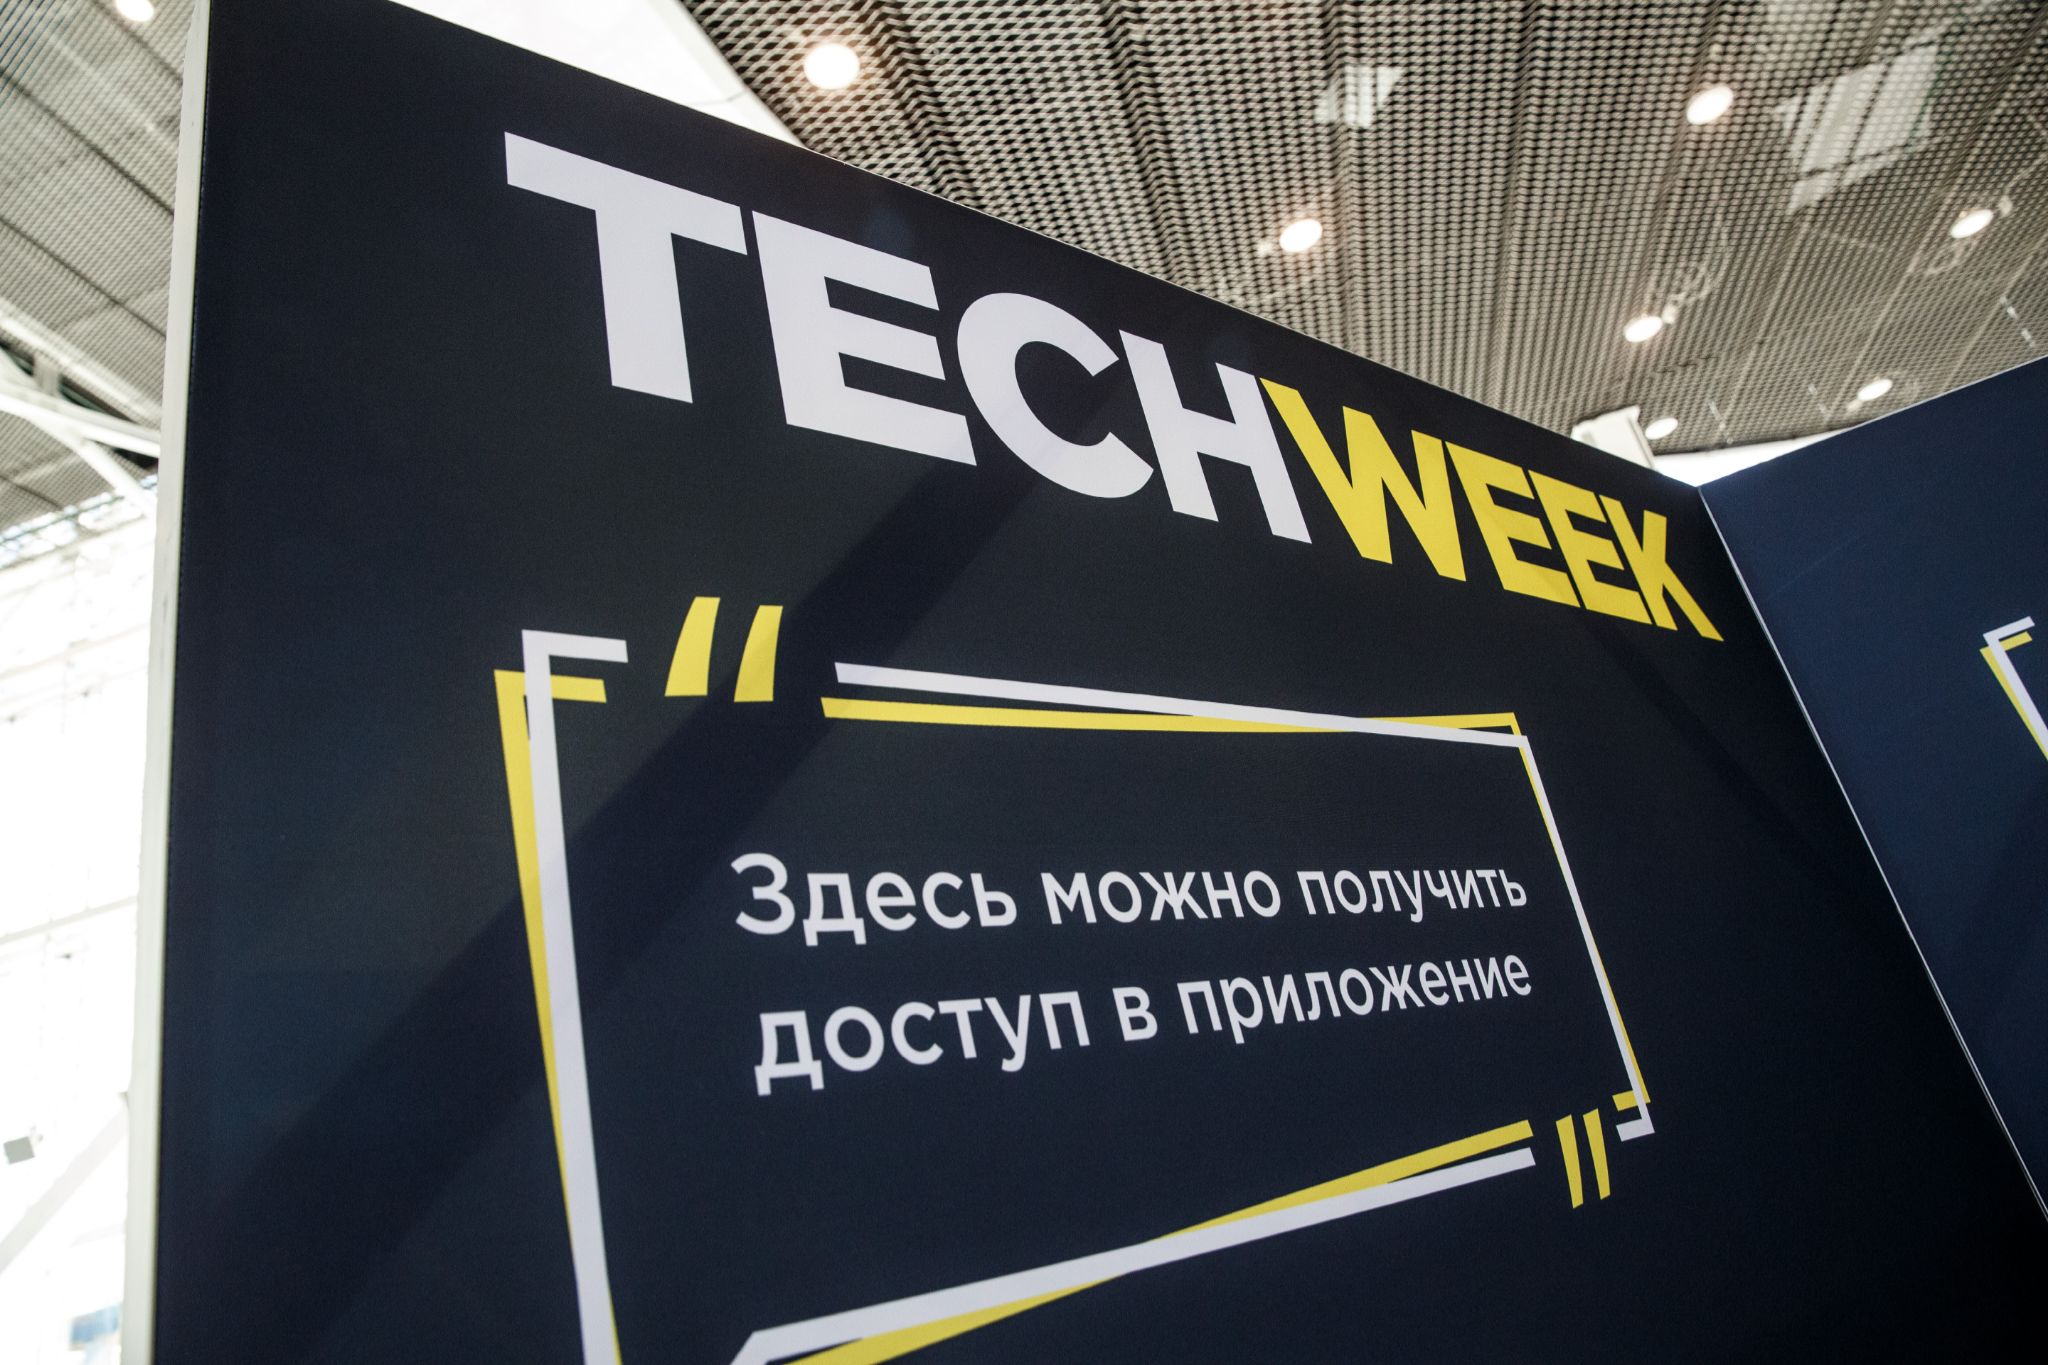 Как работает, учится и отдыхает технологический бизнес в России: в Технопарке Сколково завершилась масштабная конференция и выставка Tech Week 2021